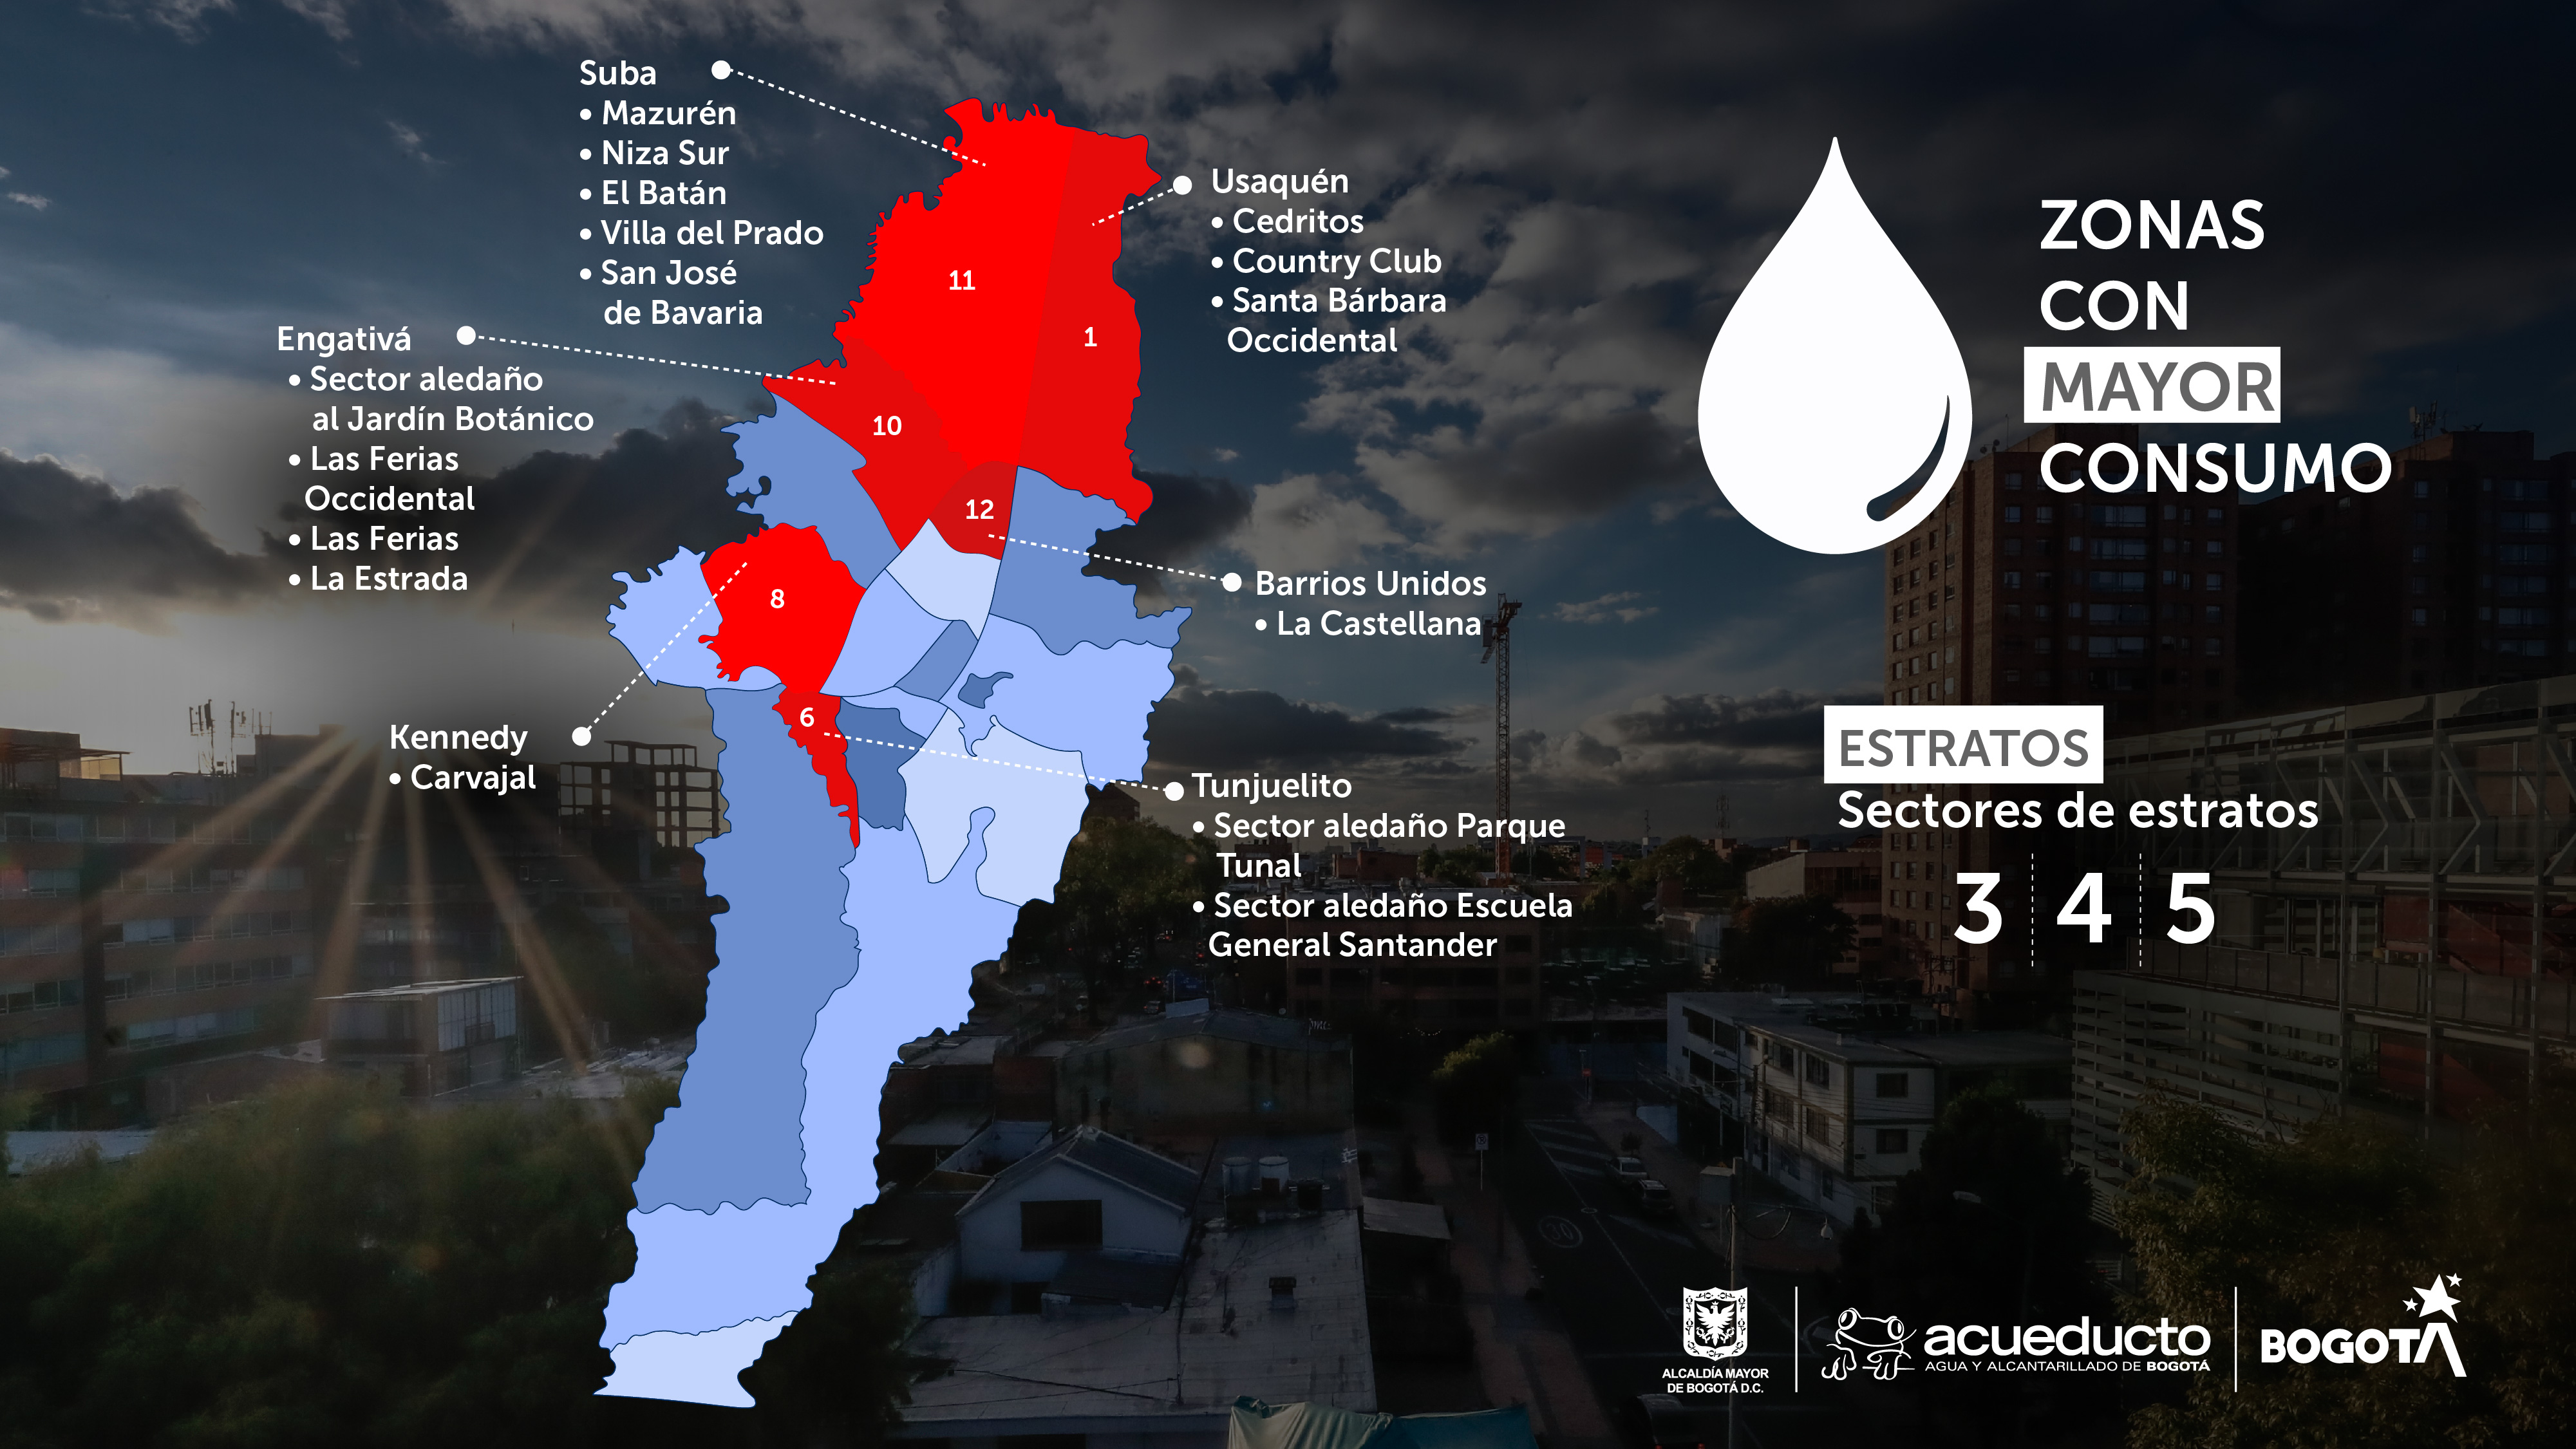 Estos son los 16 sectores o barrios de Bogotá con mayor consumo de agua